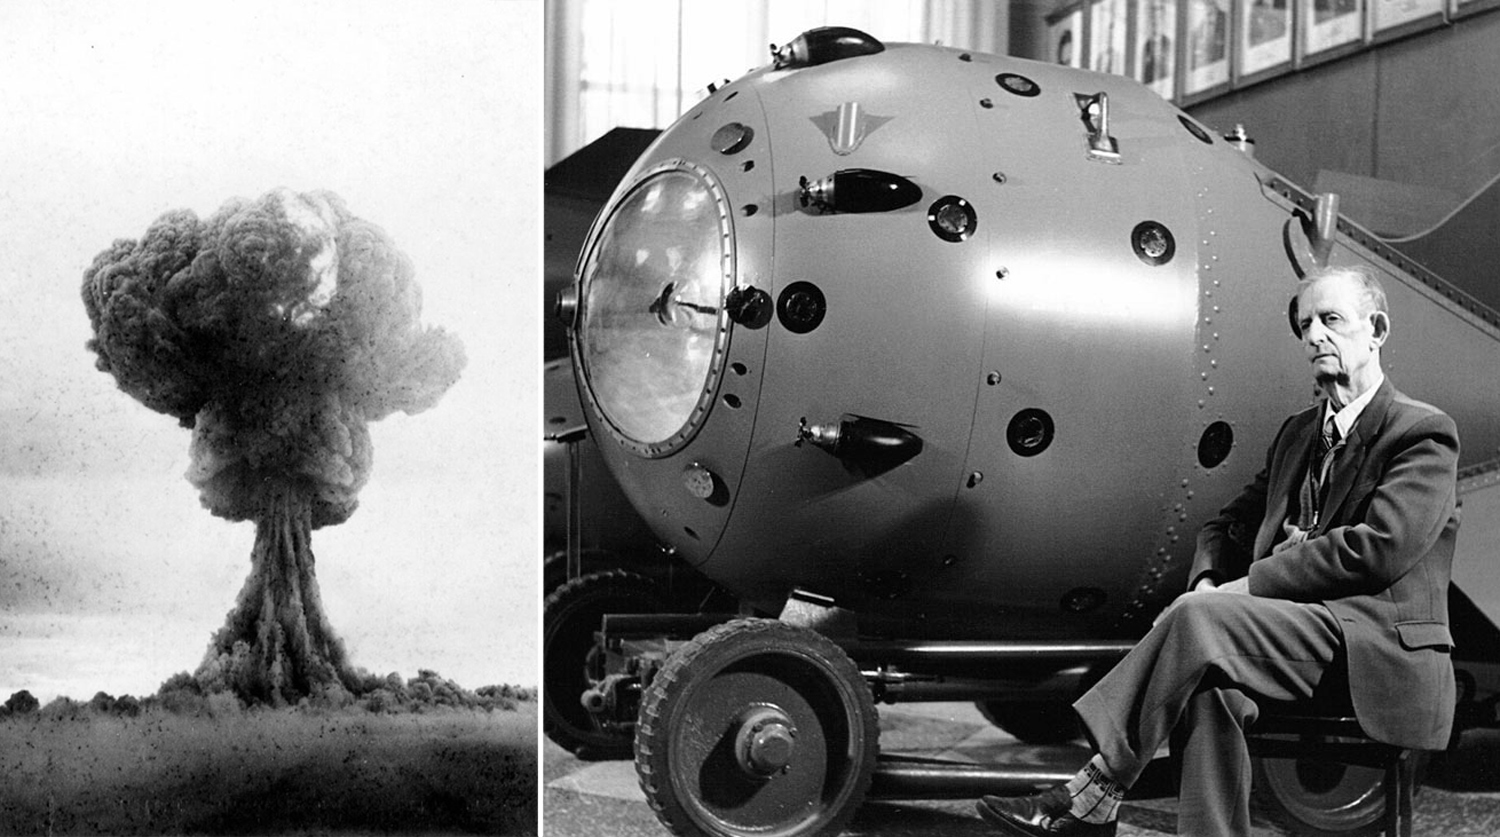 Ссср было создано атомное оружие. Первая Советская атомная бомба РДС-1. Советская атомная бомба 1949. Испытание первой атомной бомбы в СССР. РДС-1. Ядерная бомба СССР РДС 1.